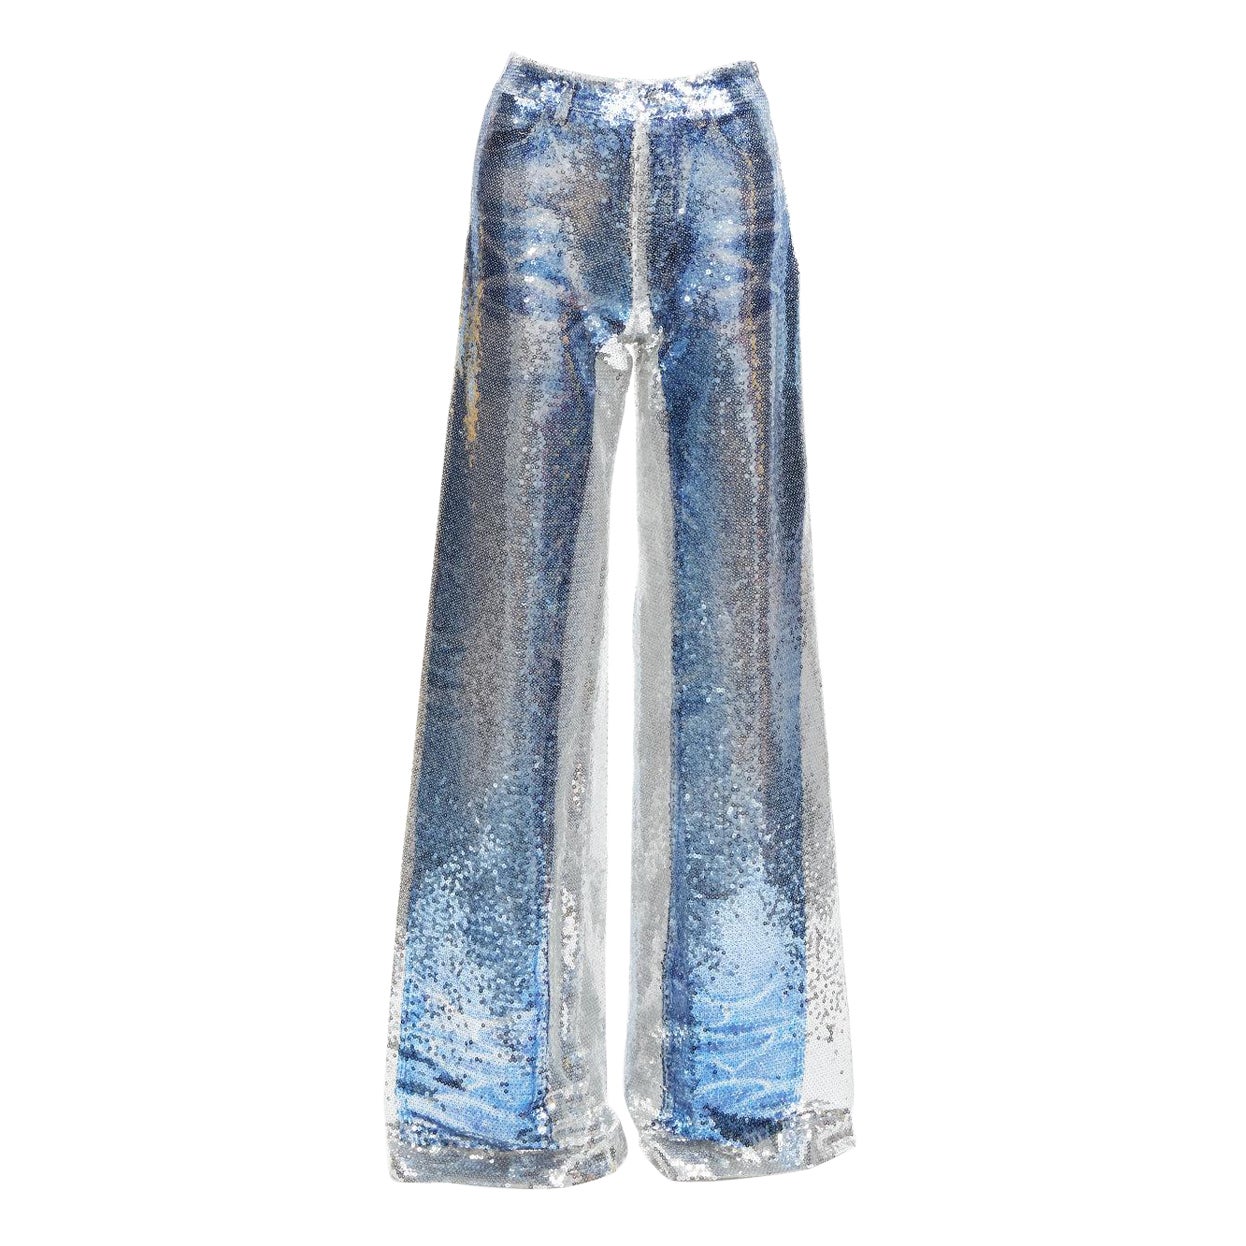 PONY STONE THAILAND silver tromp loeil jeans print sequins wide leg pants US2 S